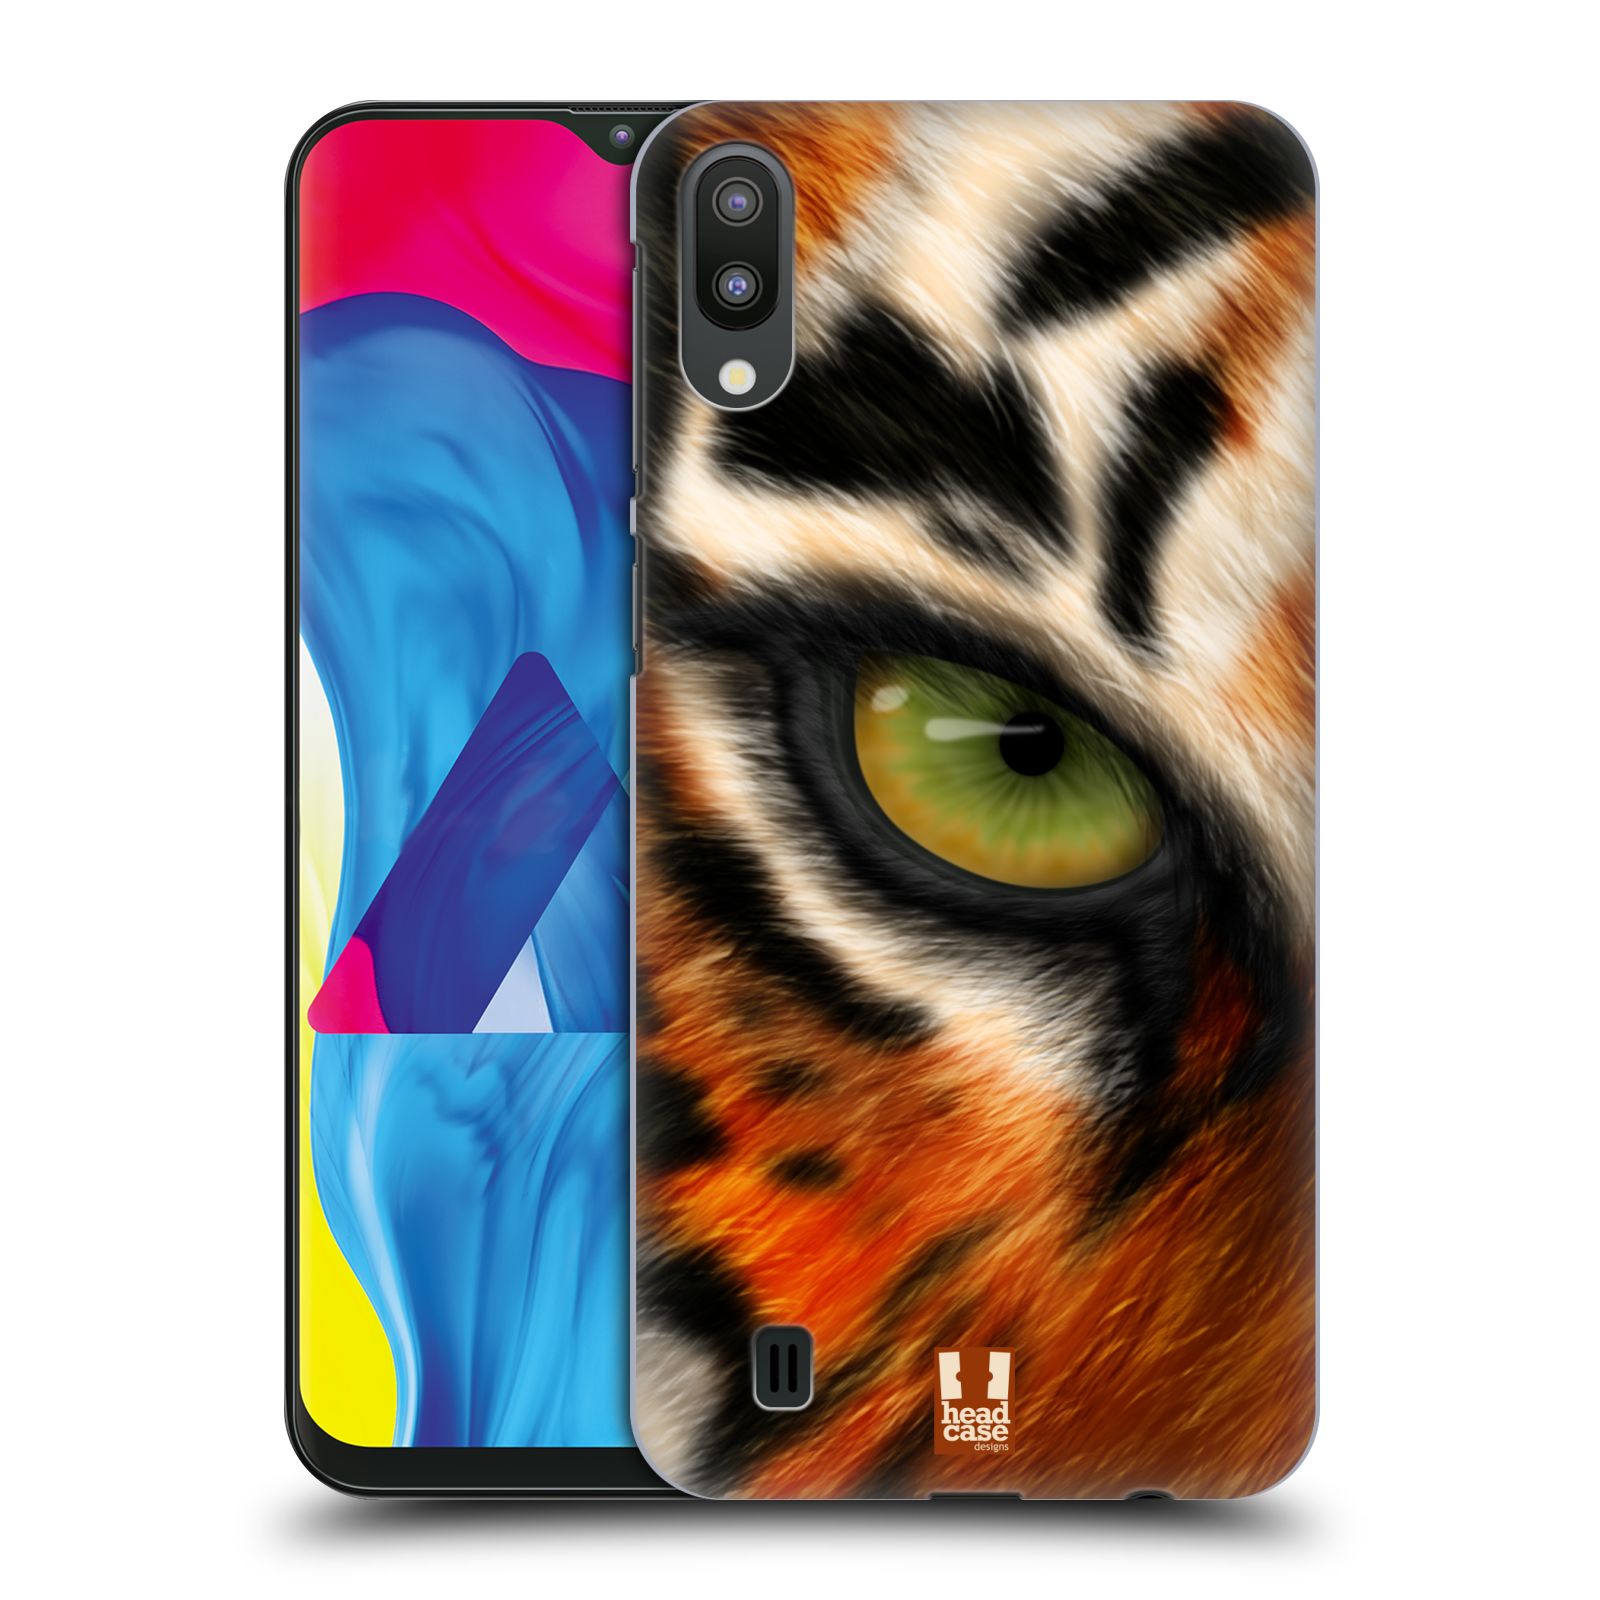 Plastový obal HEAD CASE na mobil Samsung Galaxy M10 vzor pohled zvířete oko tygr